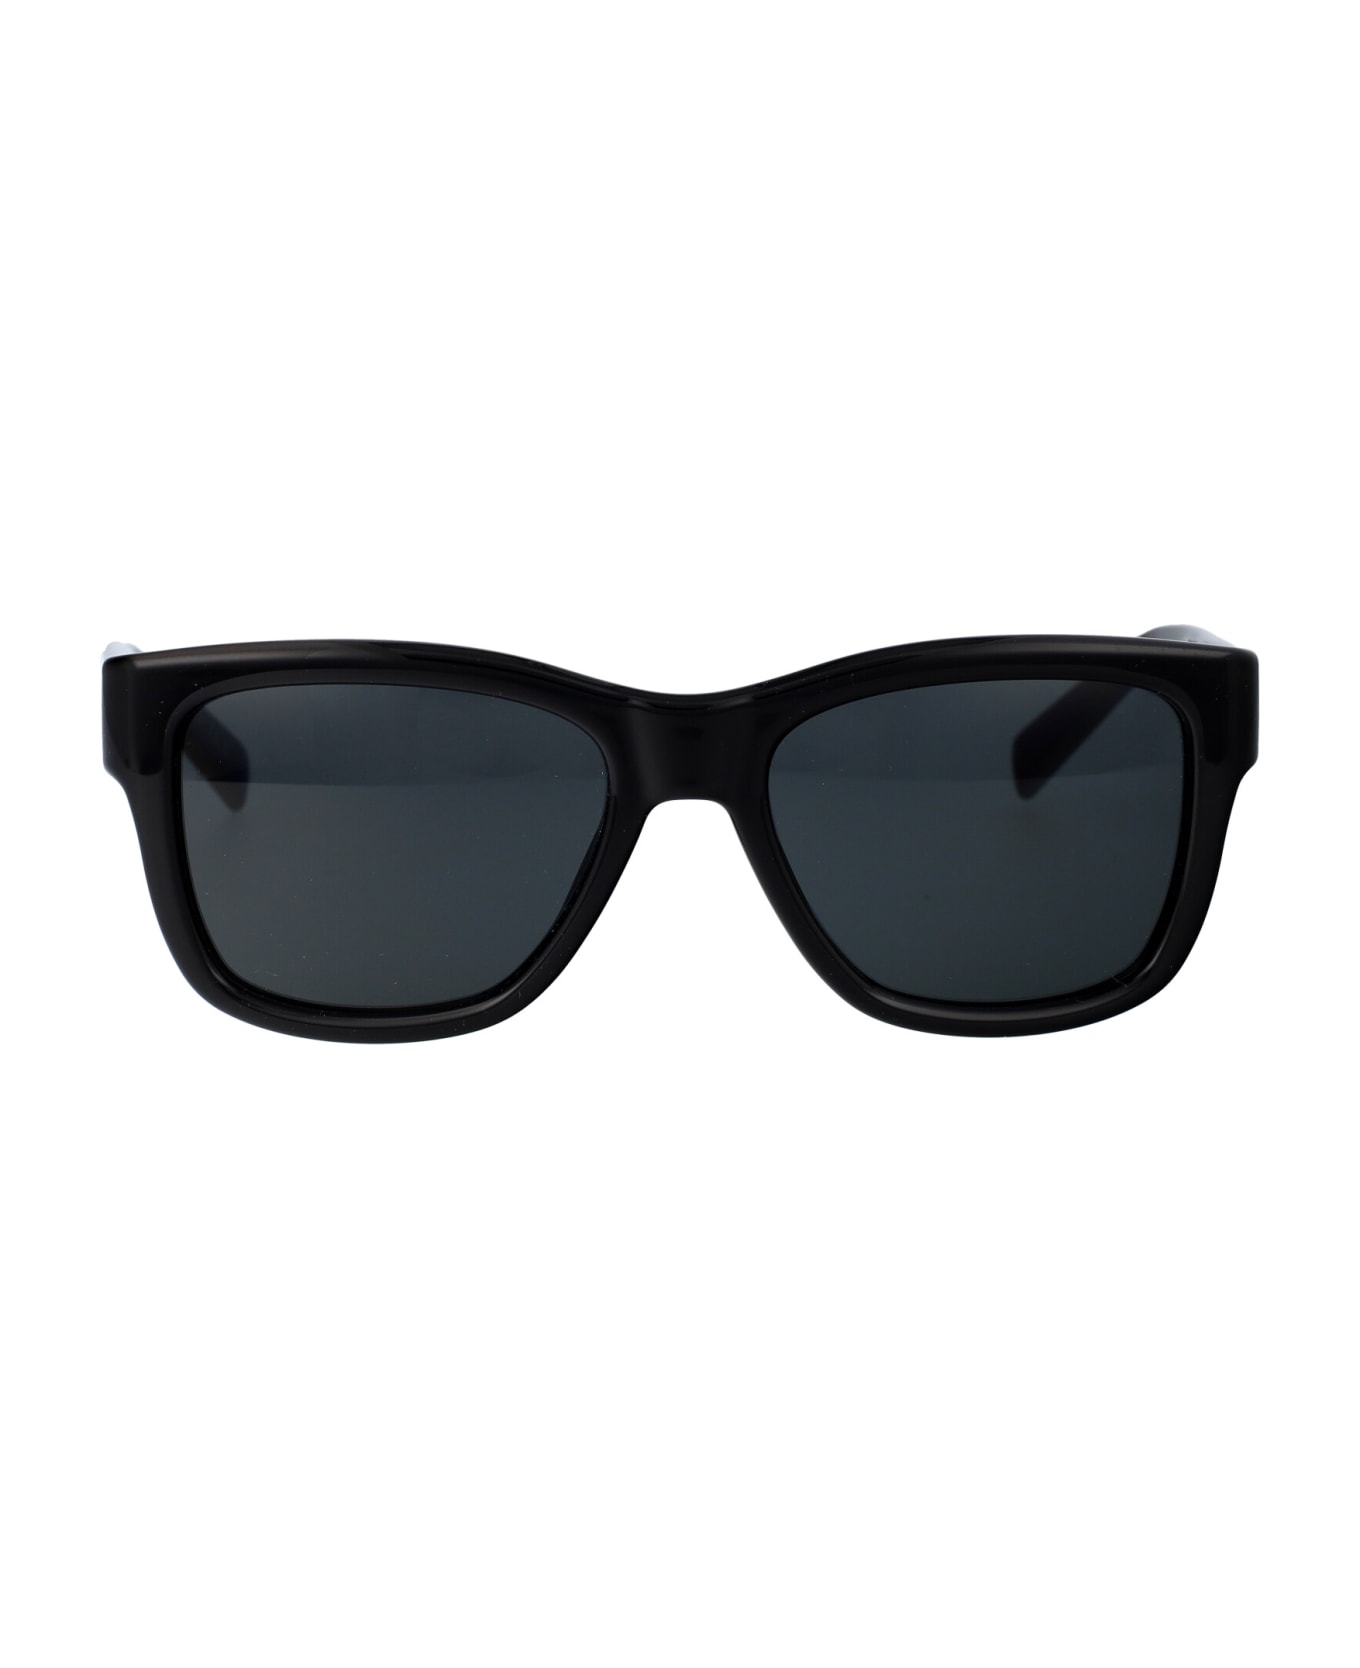 Saint Laurent Eyewear Sl 674 Sunglasses - 001 BLACK BLACK BLACK サングラス